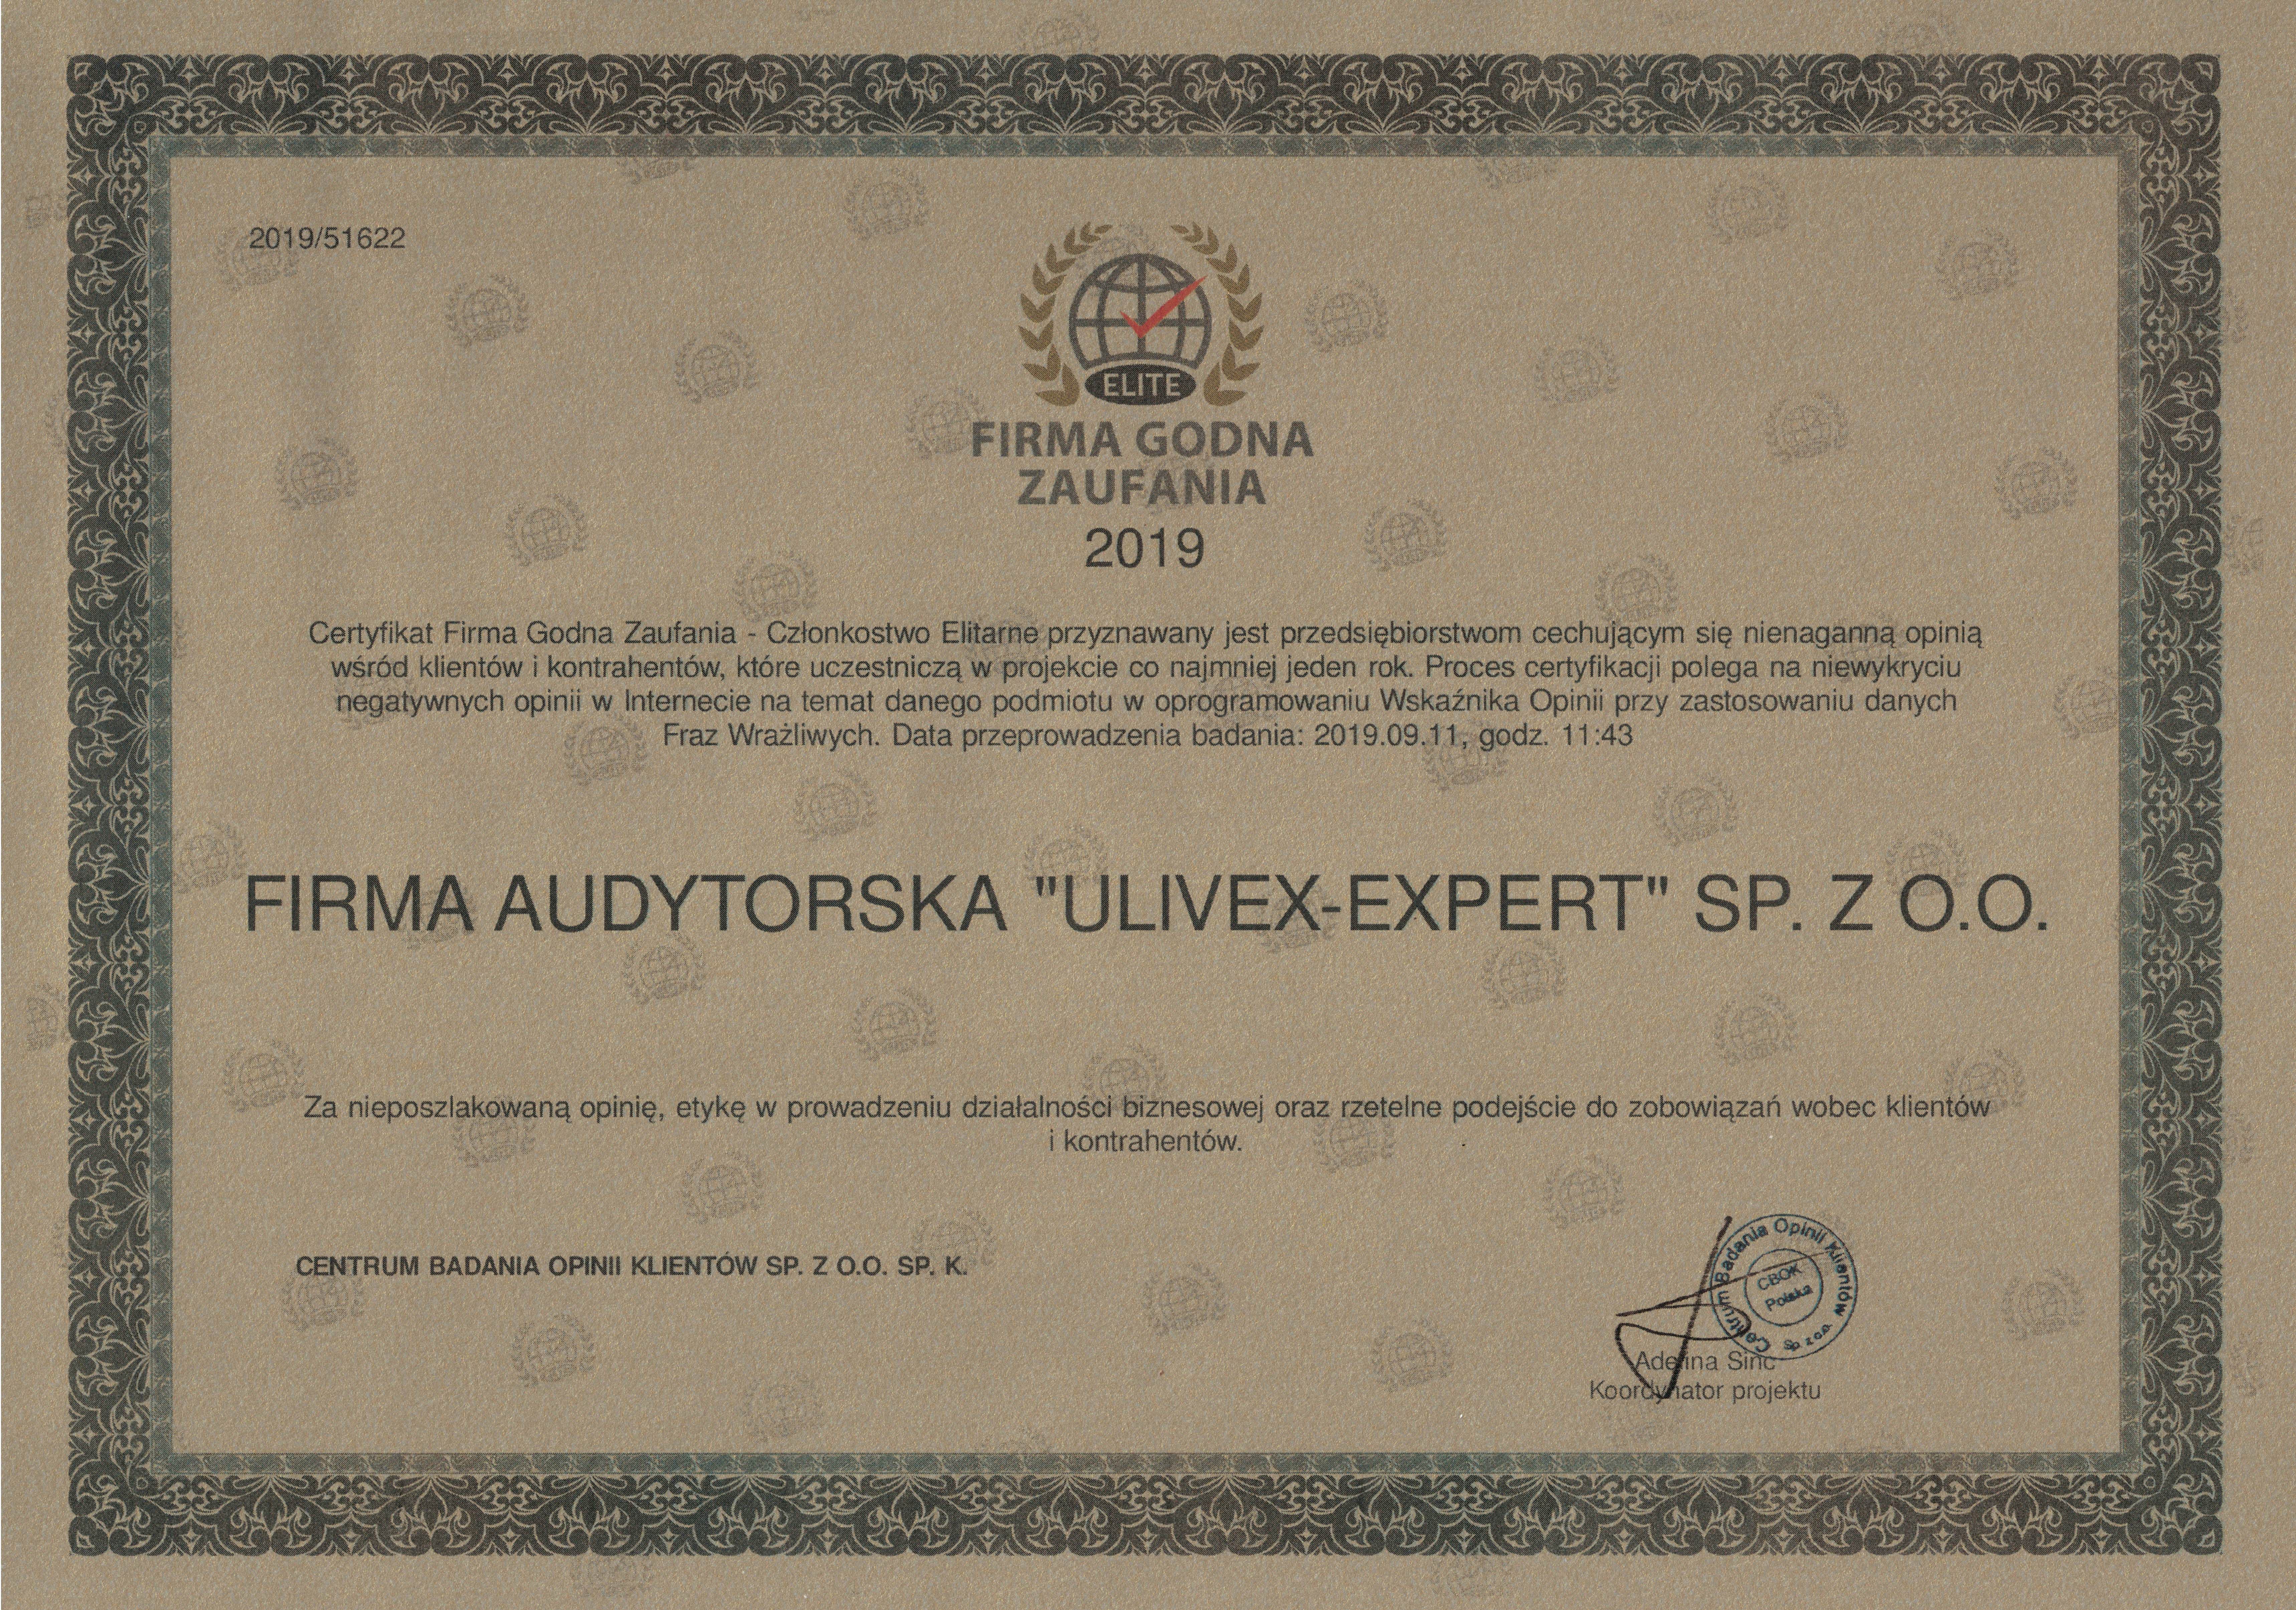 Ulivex dyplom FGZ 2019